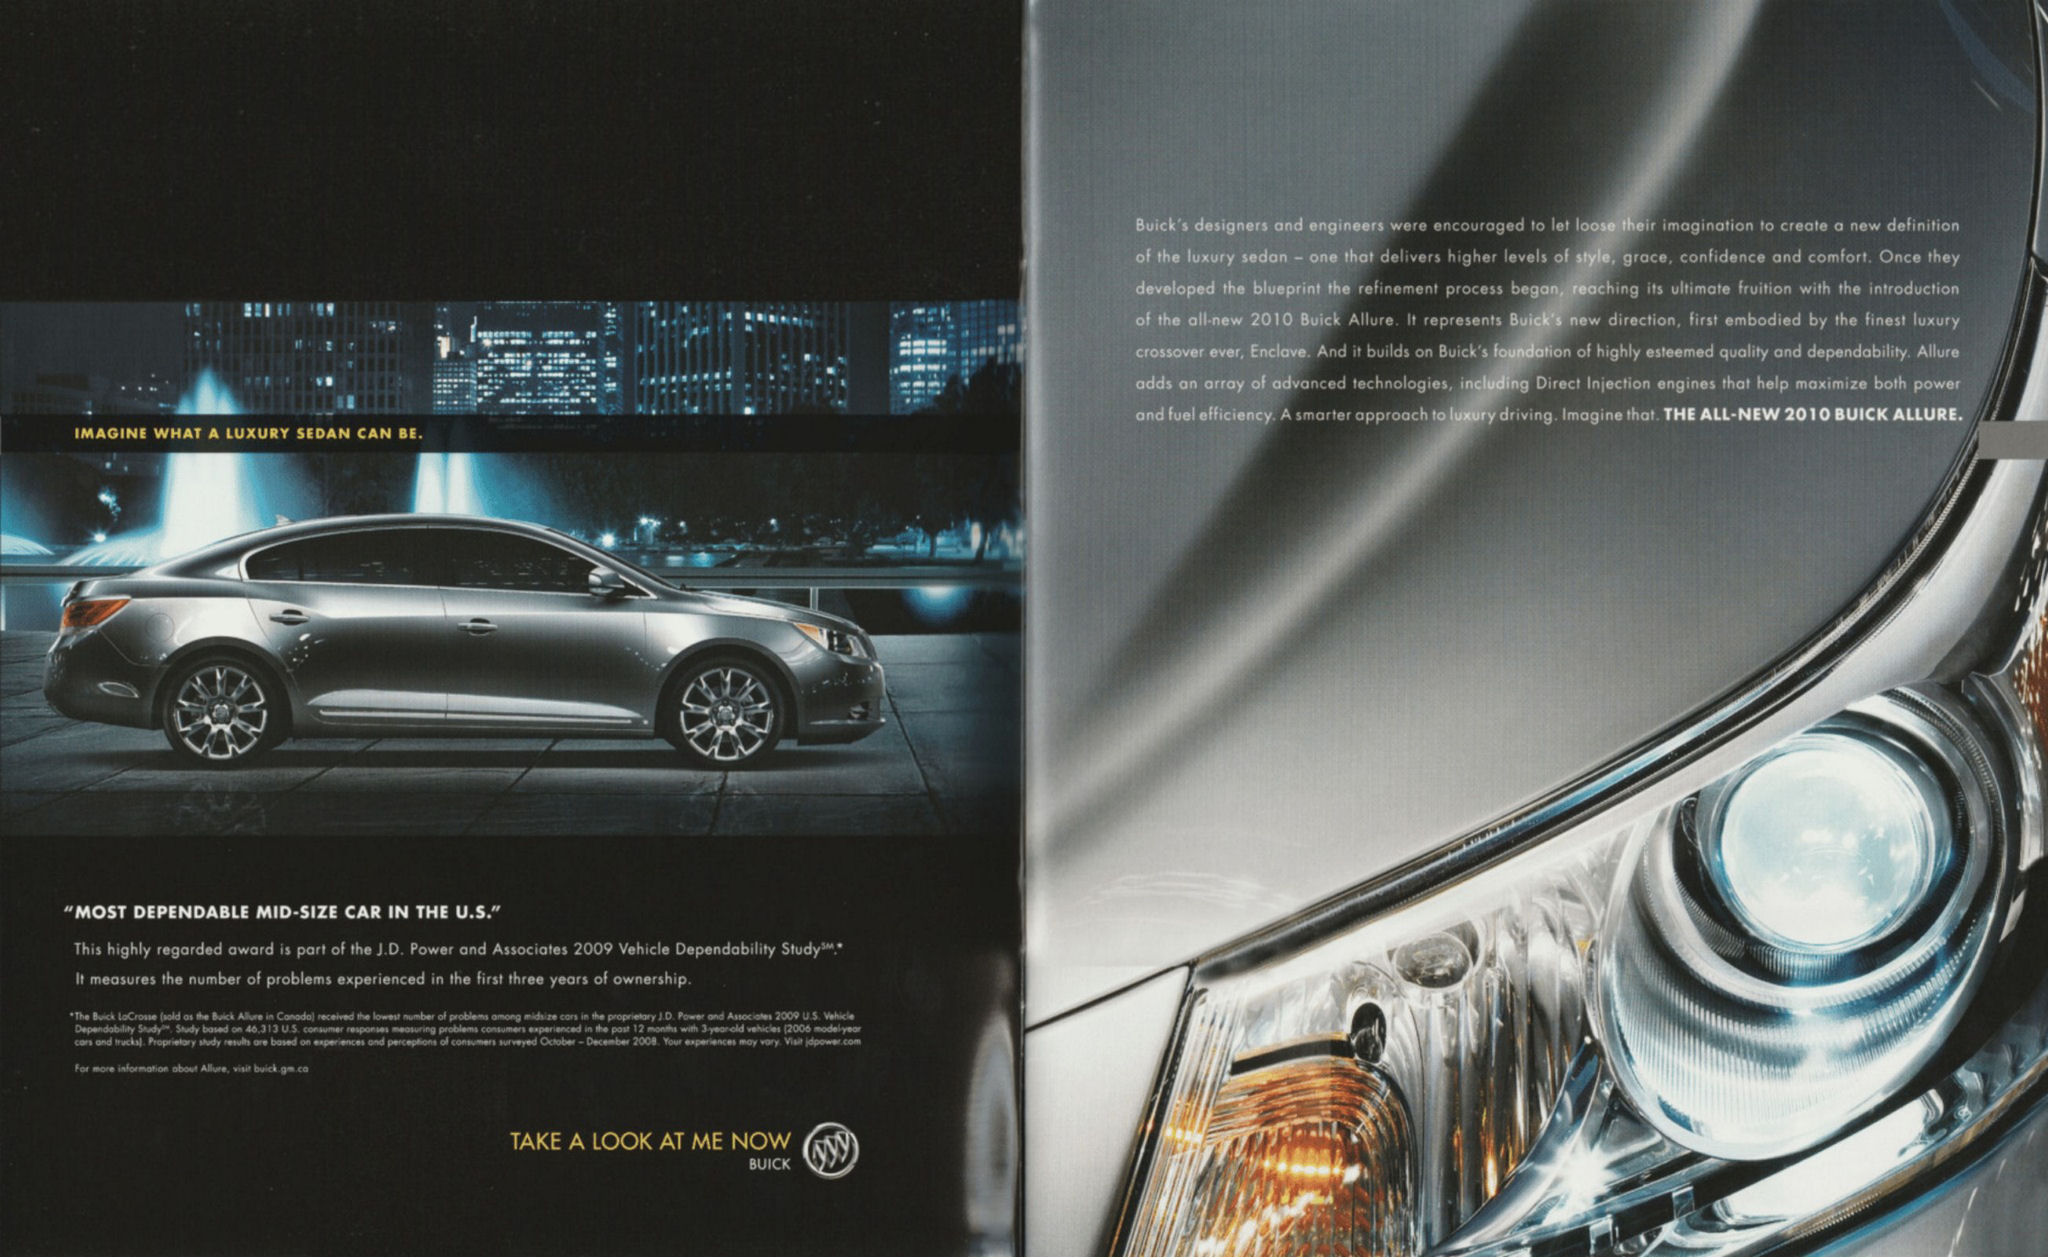 2010 Buick Allure (Cdn).pdf-2023-11-16 14.14.22_Page_02